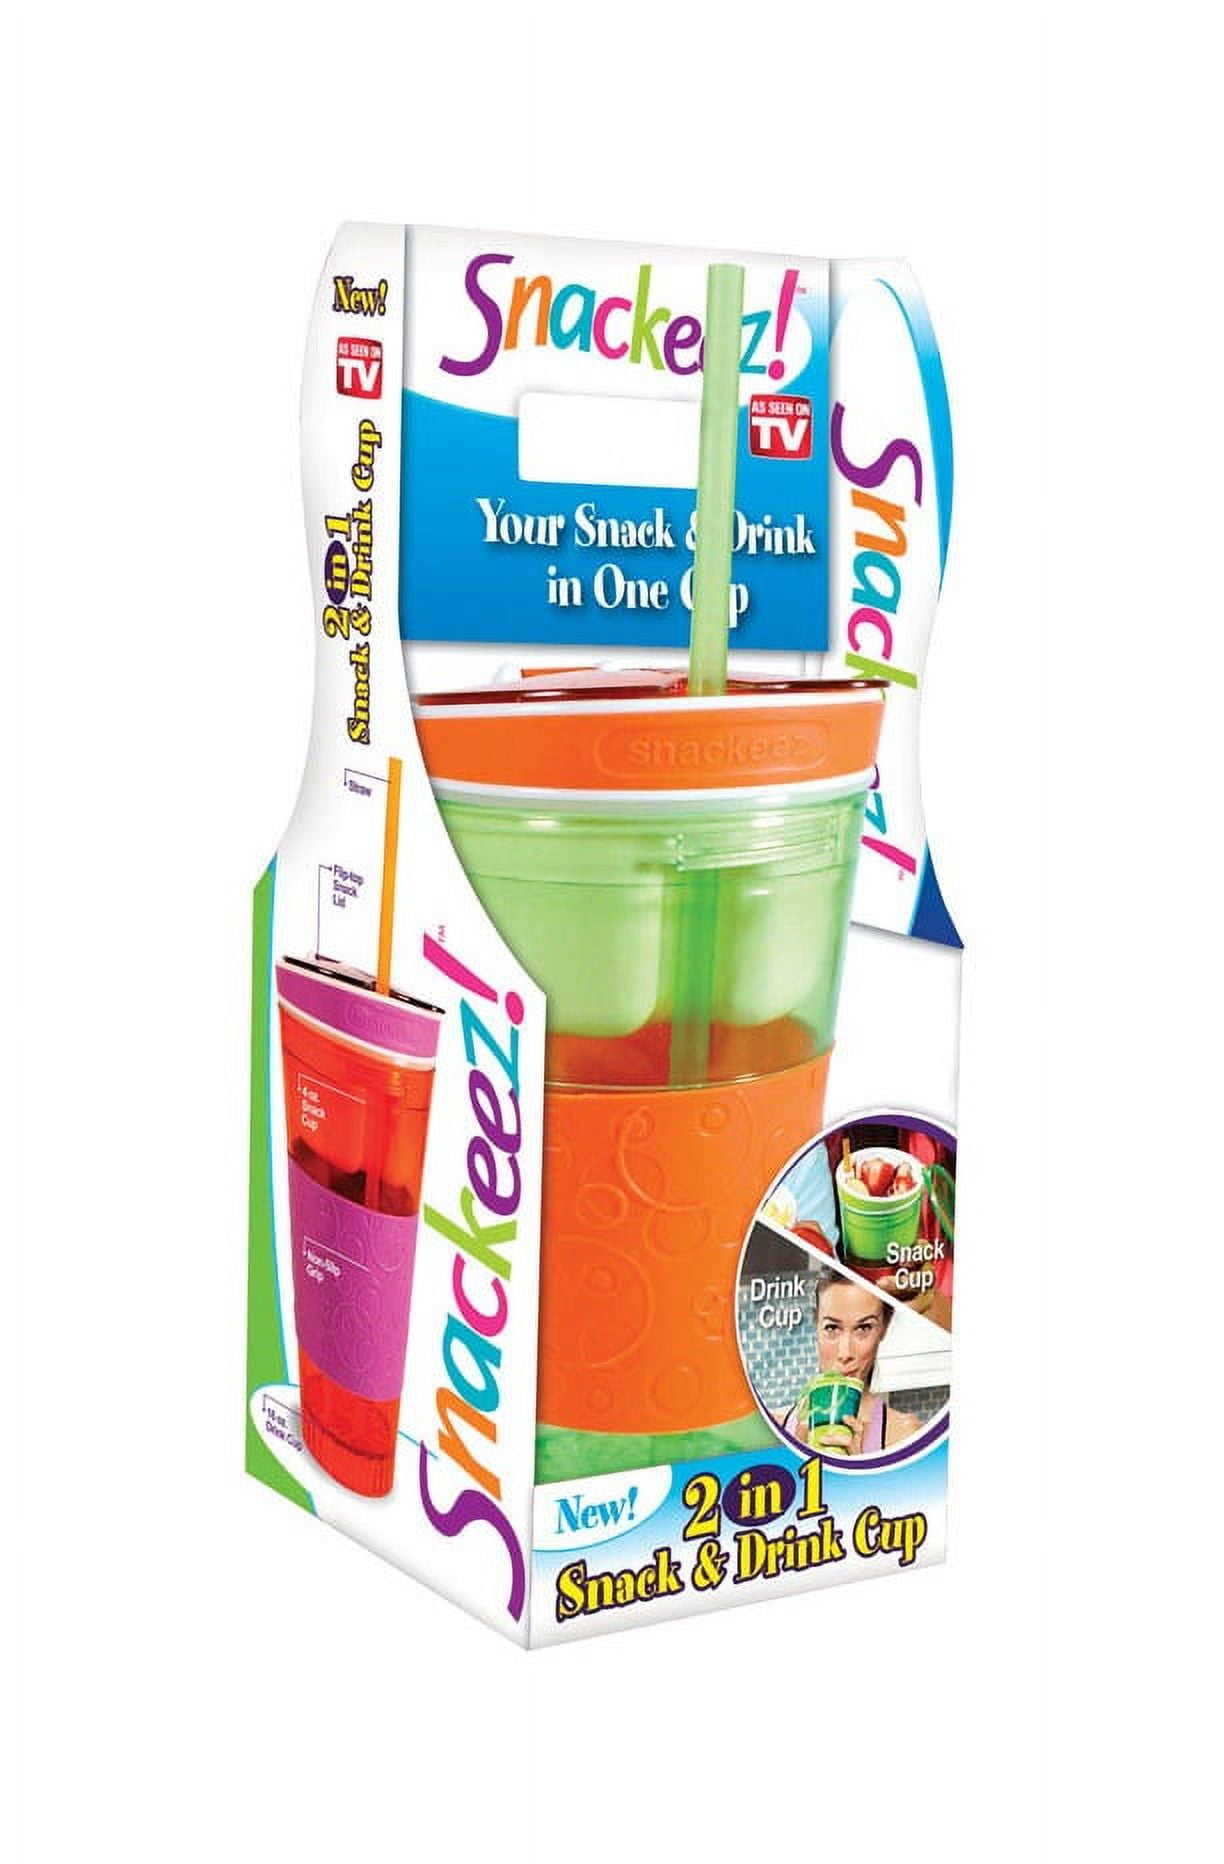 Snackeez™ 2-in-1 Snack Cup - Pink/Blue, 24 oz - Harris Teeter